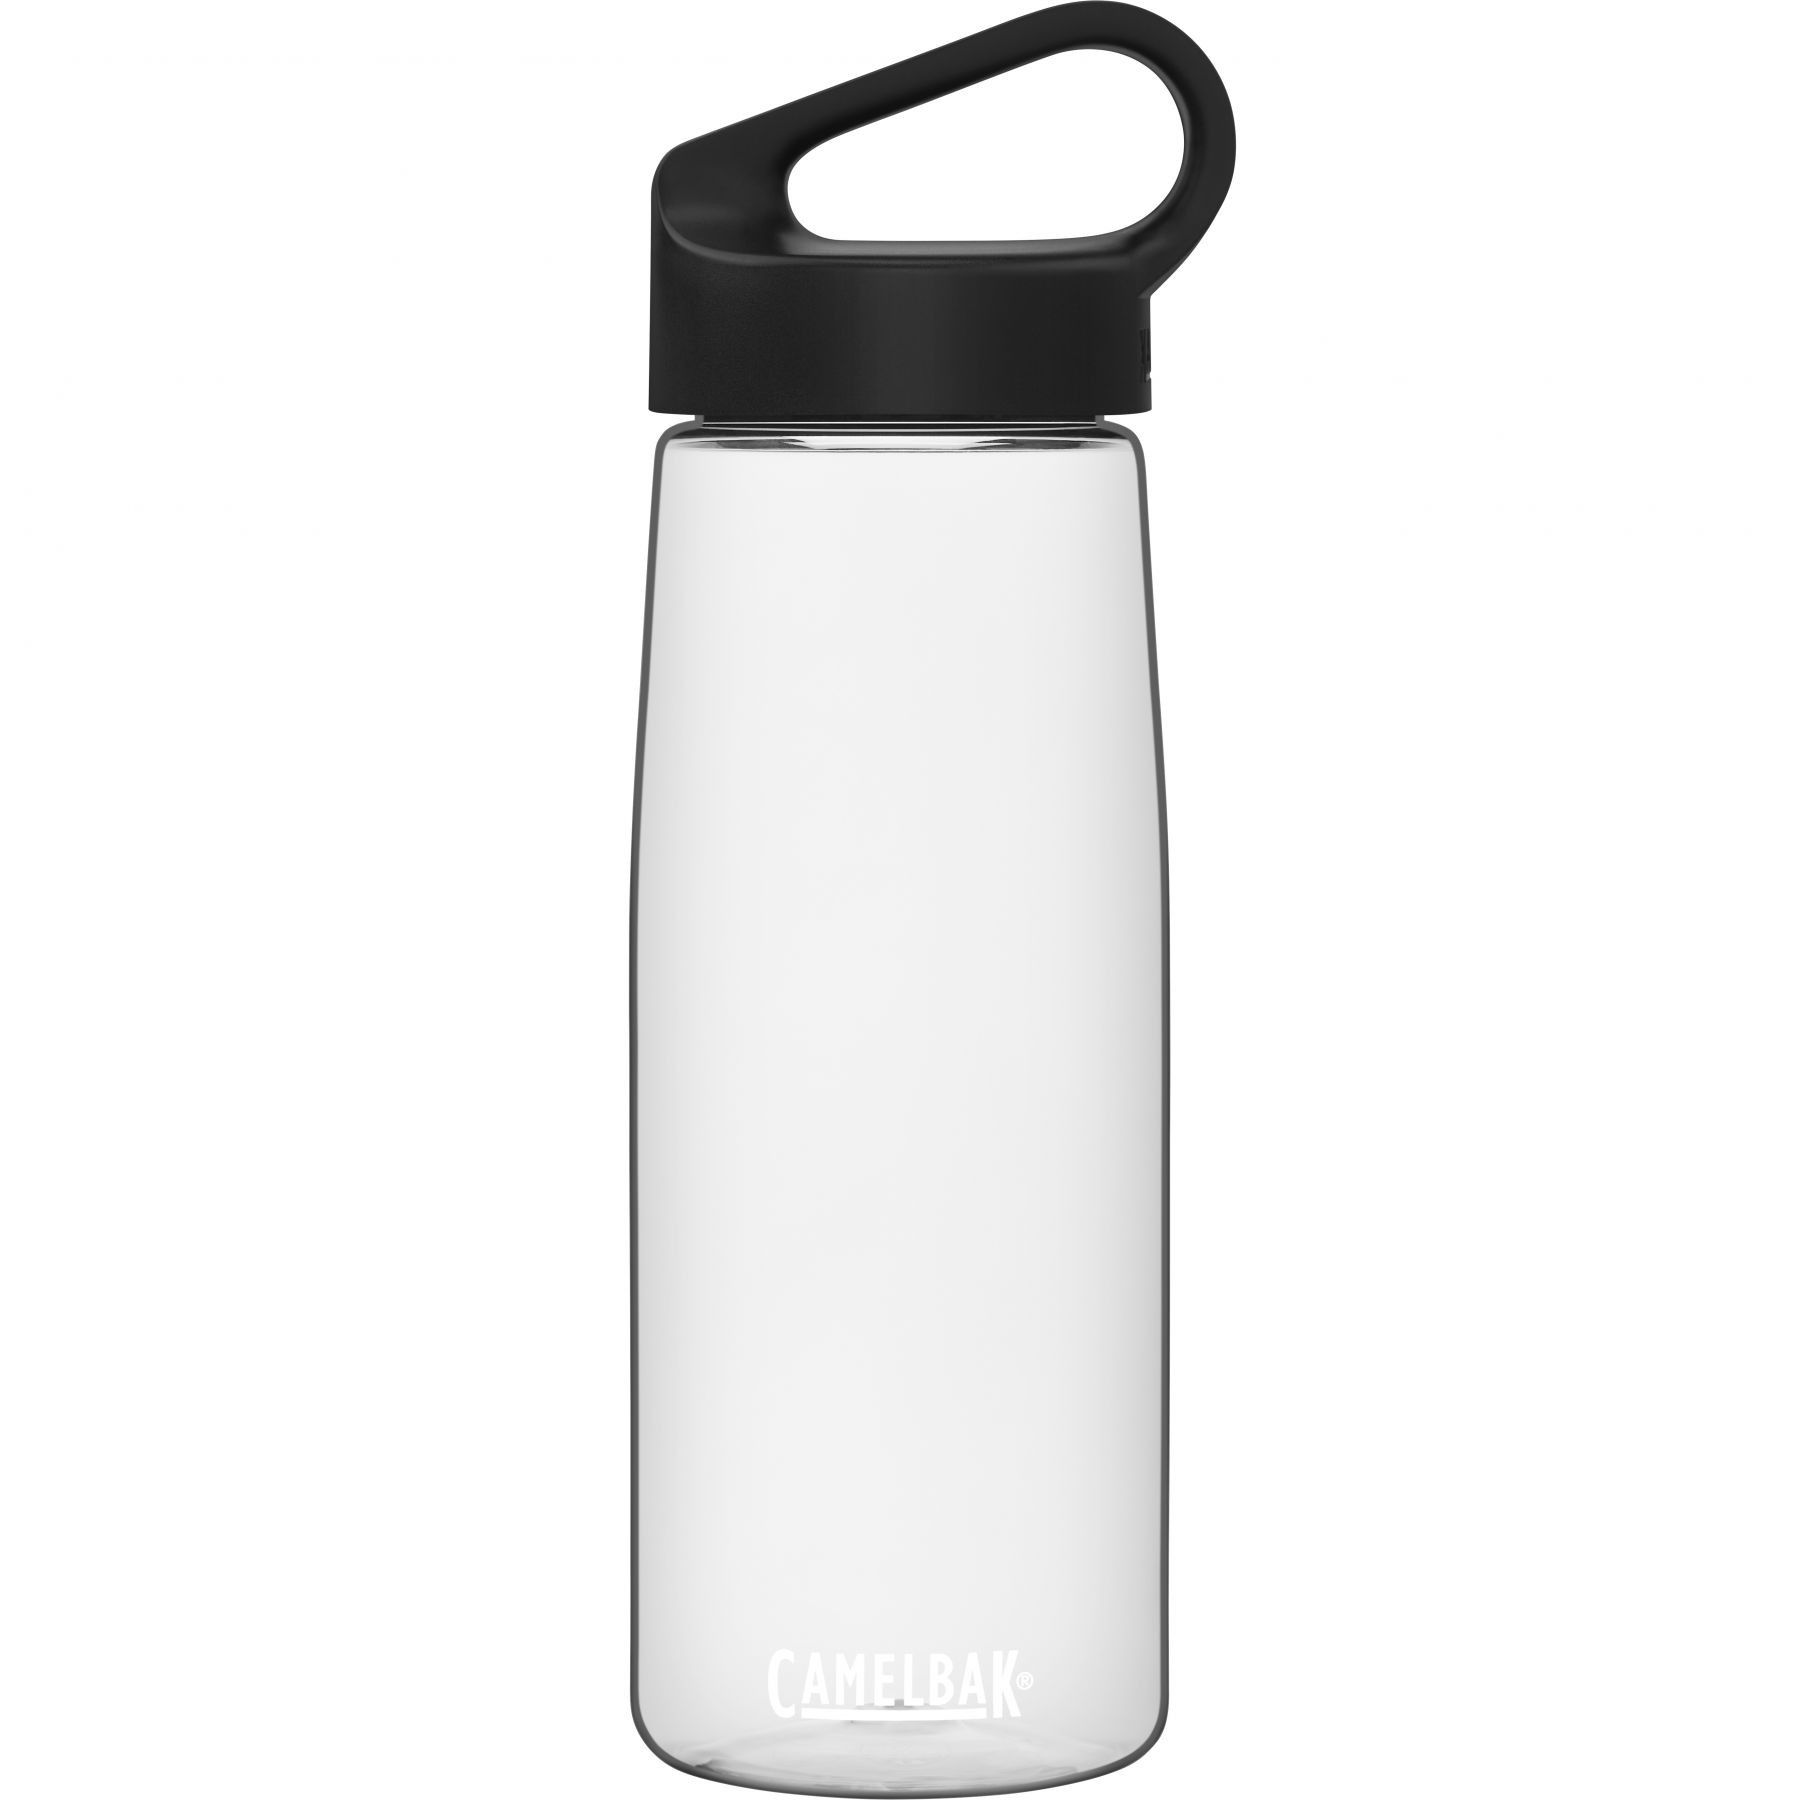 Brug CamelBak Carry Cap, drikkedunk, 0,75L, transparent til en forbedret oplevelse